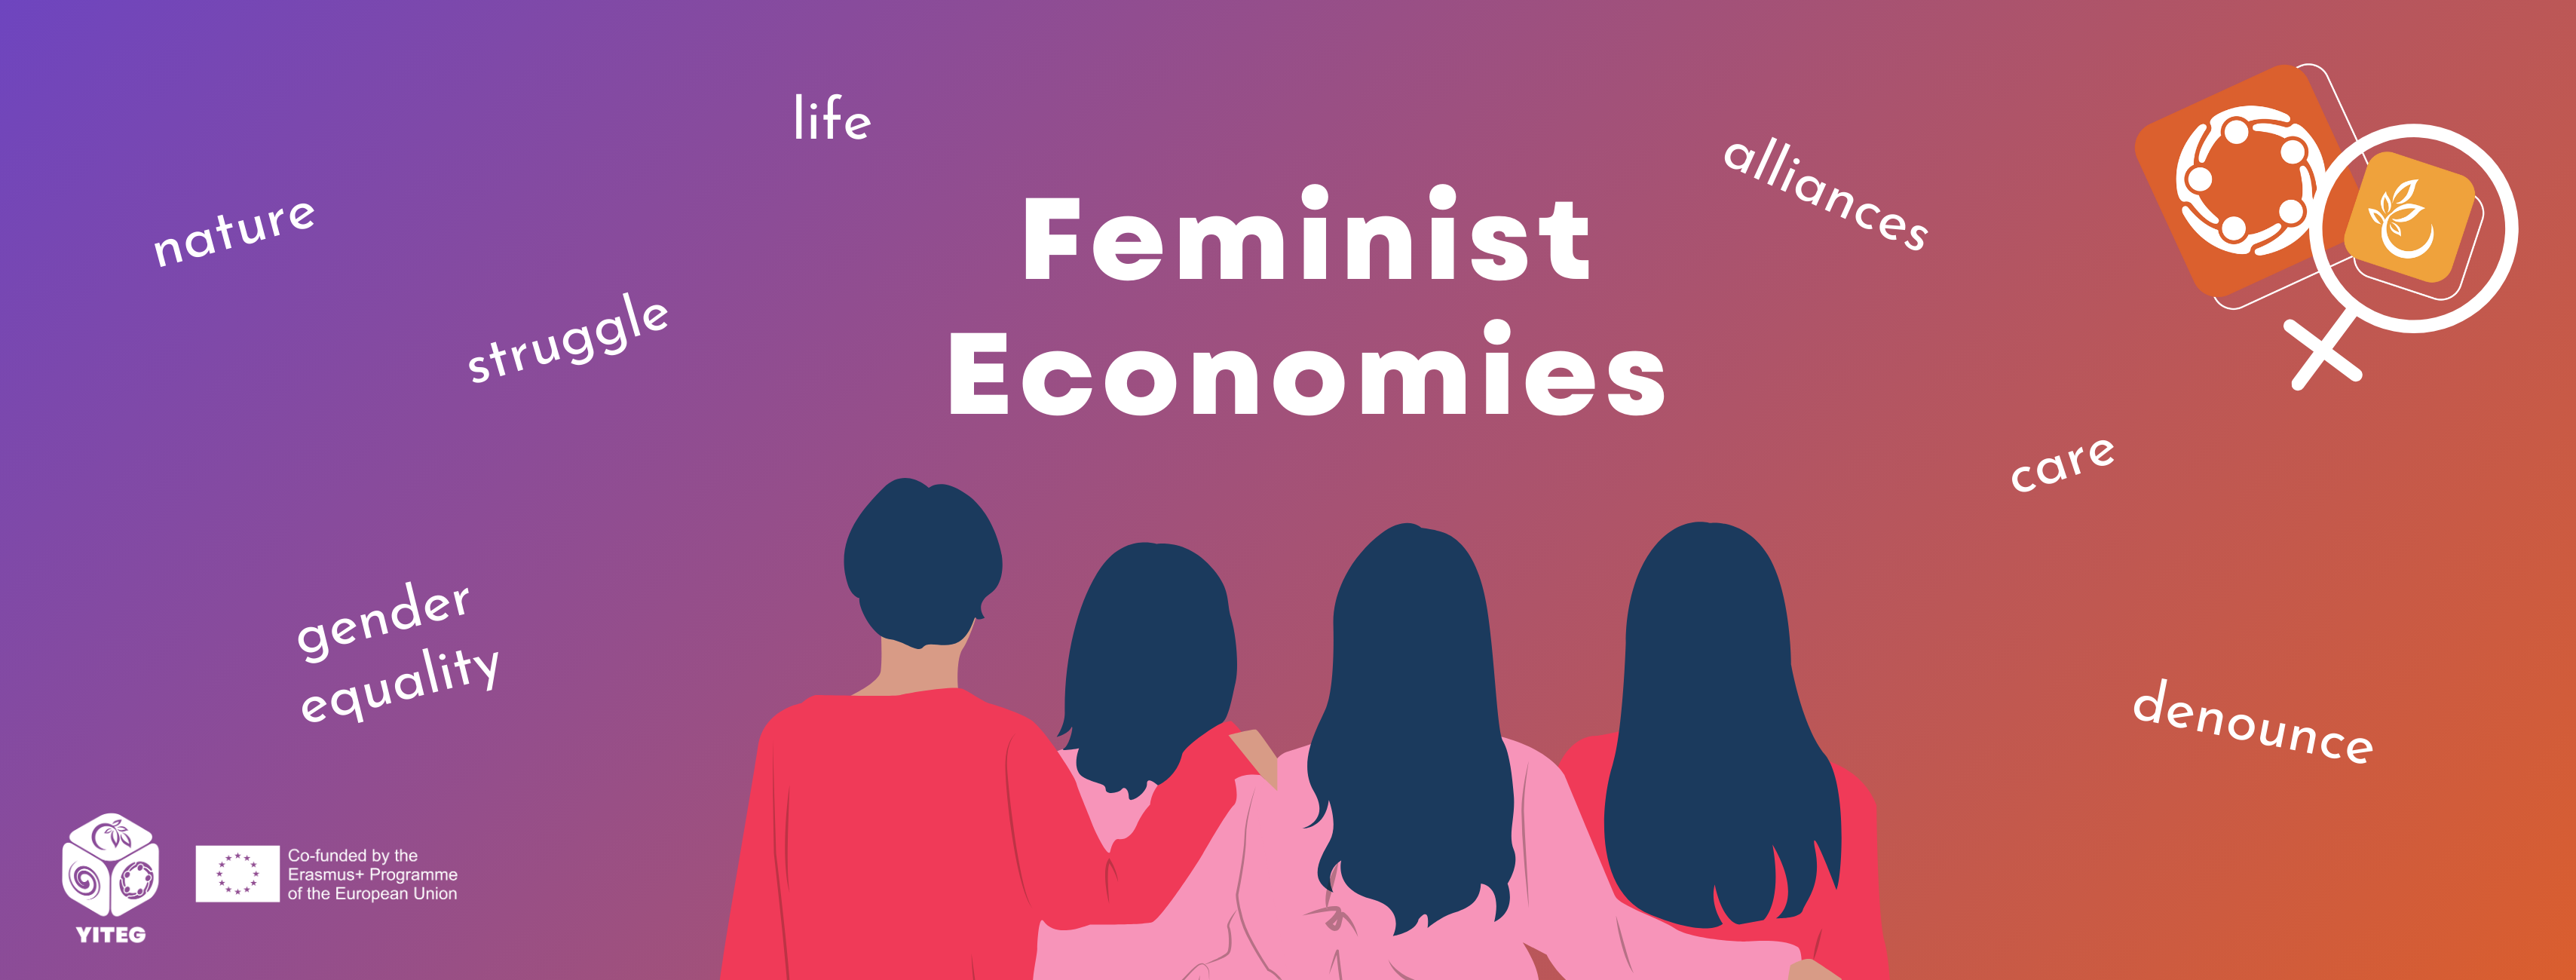 Feminist economies